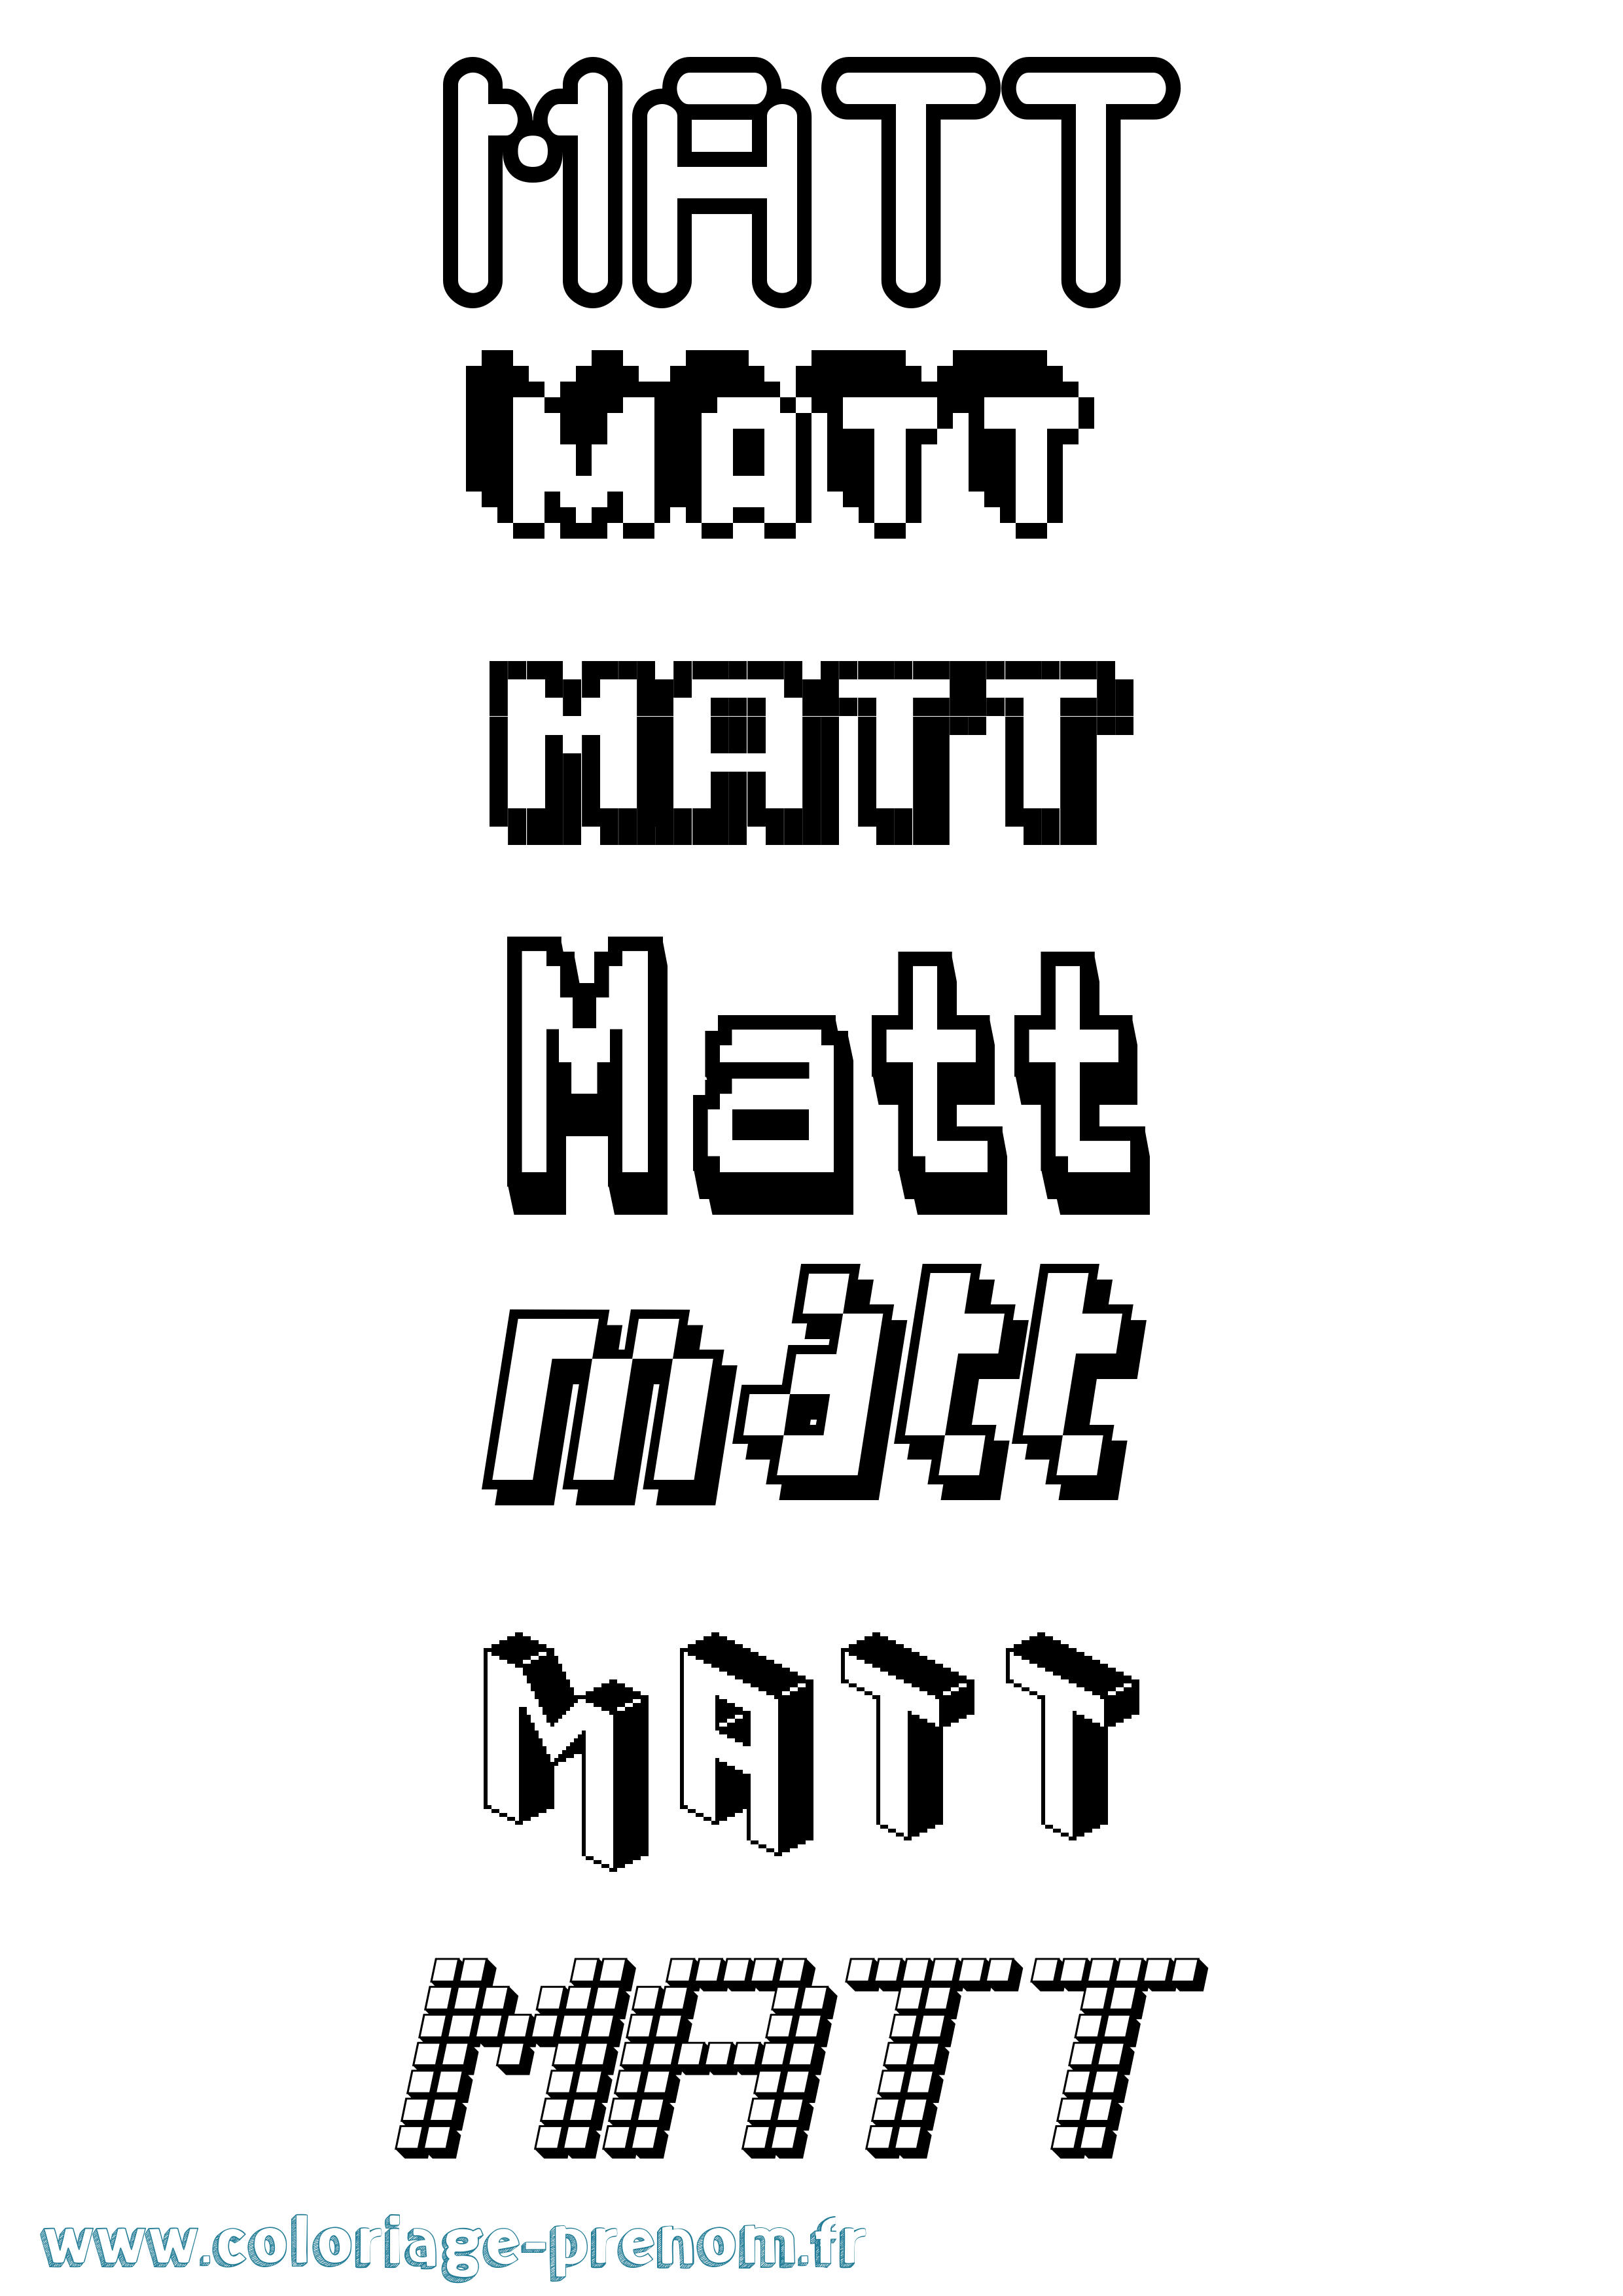 Coloriage prénom Matt Pixel